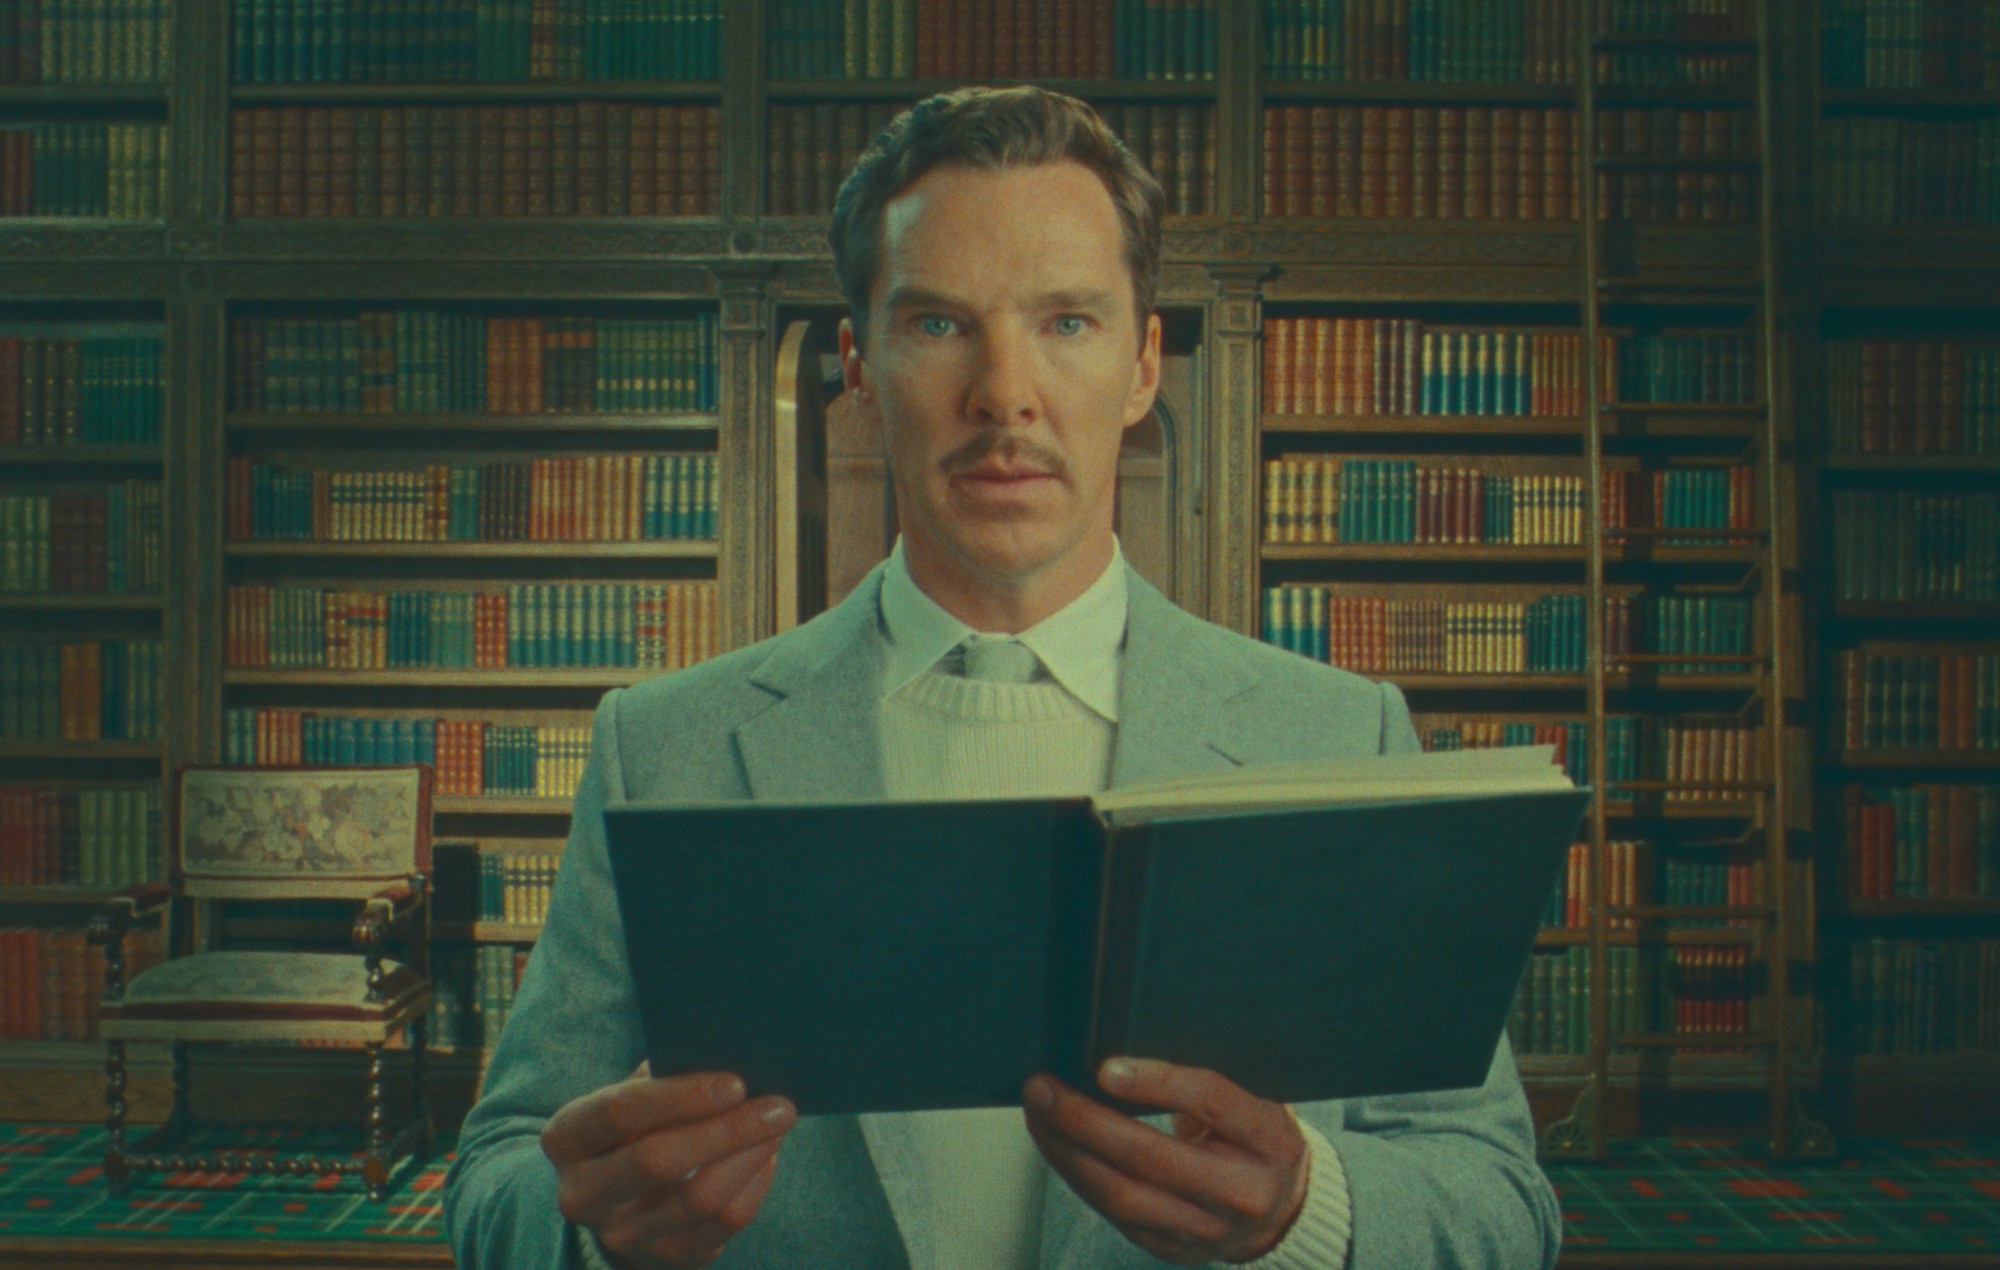 Benedict Cumberbatch protagoniza el tráiler de 'La maravillosa historia de Henry Sugar', de Wes Anderson